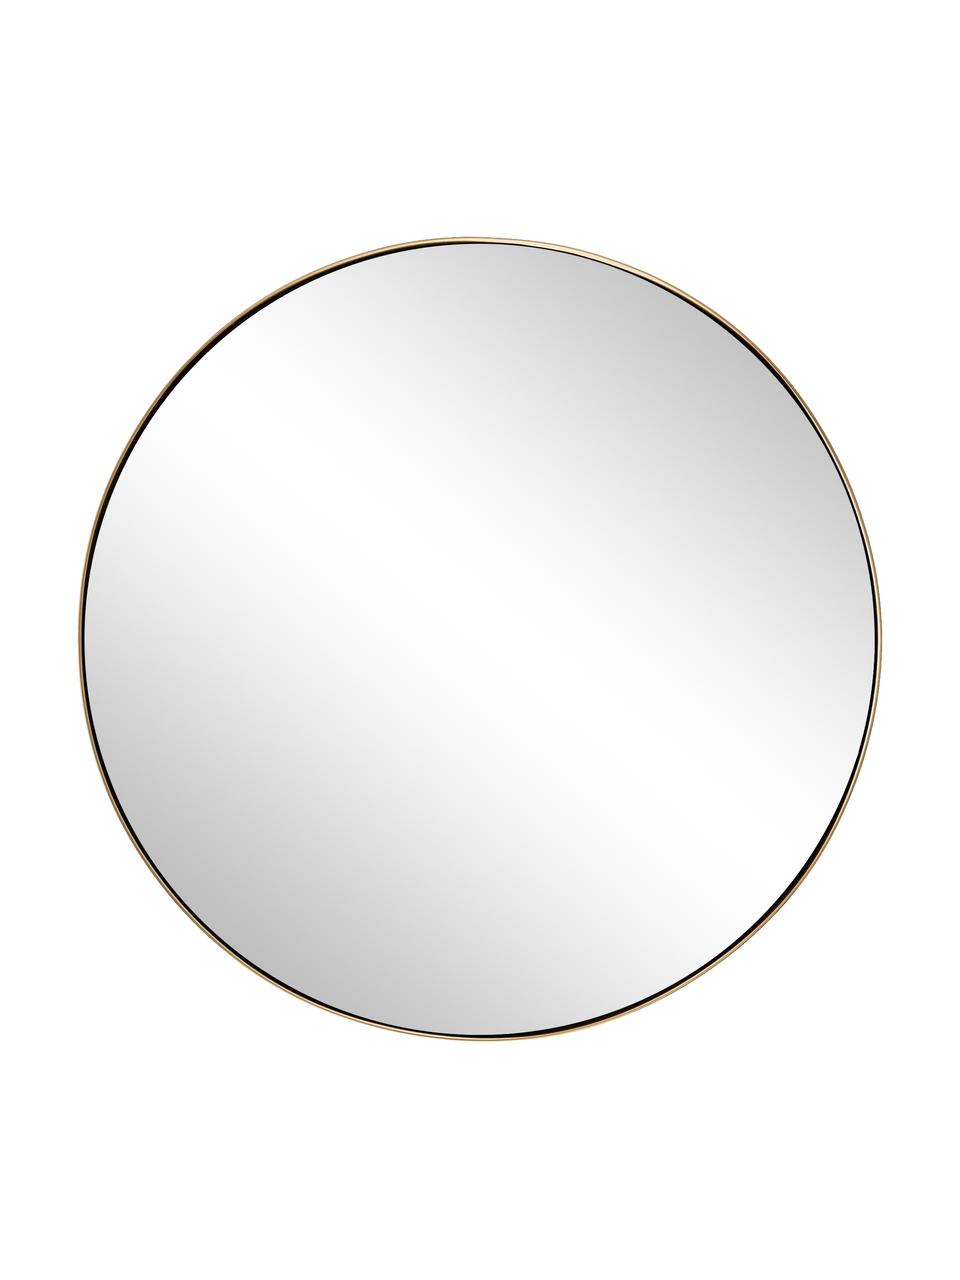 Runder Wandspiegel Lacie, Rahmen: Metall, beschichtet, Rückseite: Mitteldichte Holzfaserpla, Spiegelfläche: Spiegelglas, Goldfarben, Ø 72 cm